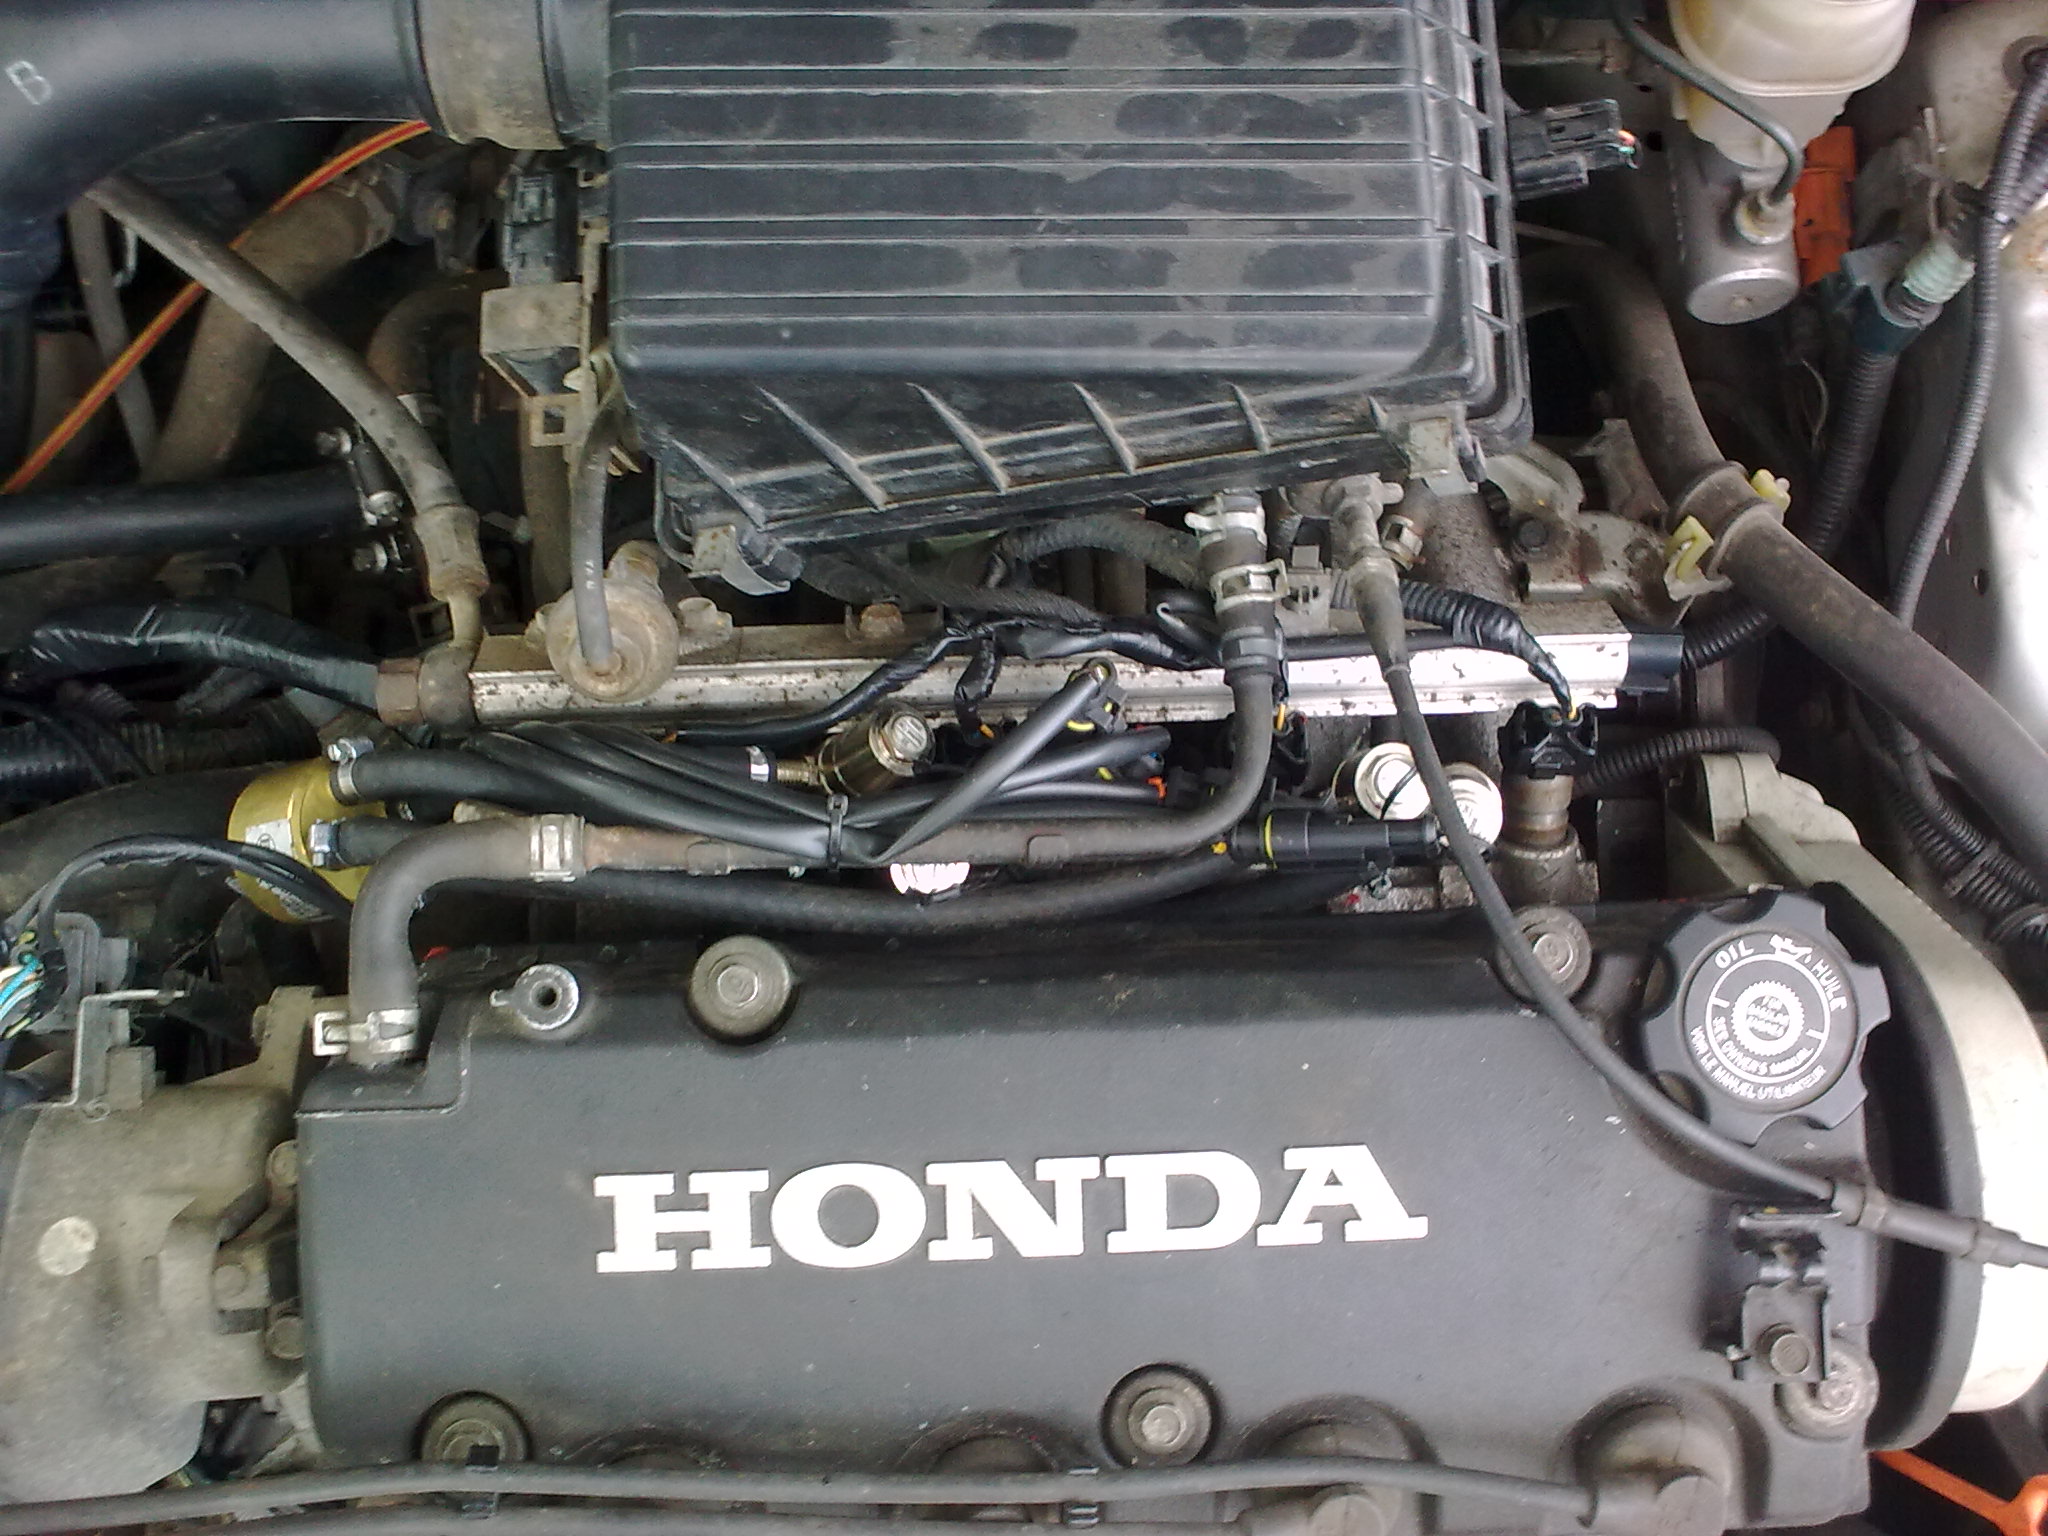 Honda Civic VI 9501 1.4 sprawdzone istawienia elektroda.pl